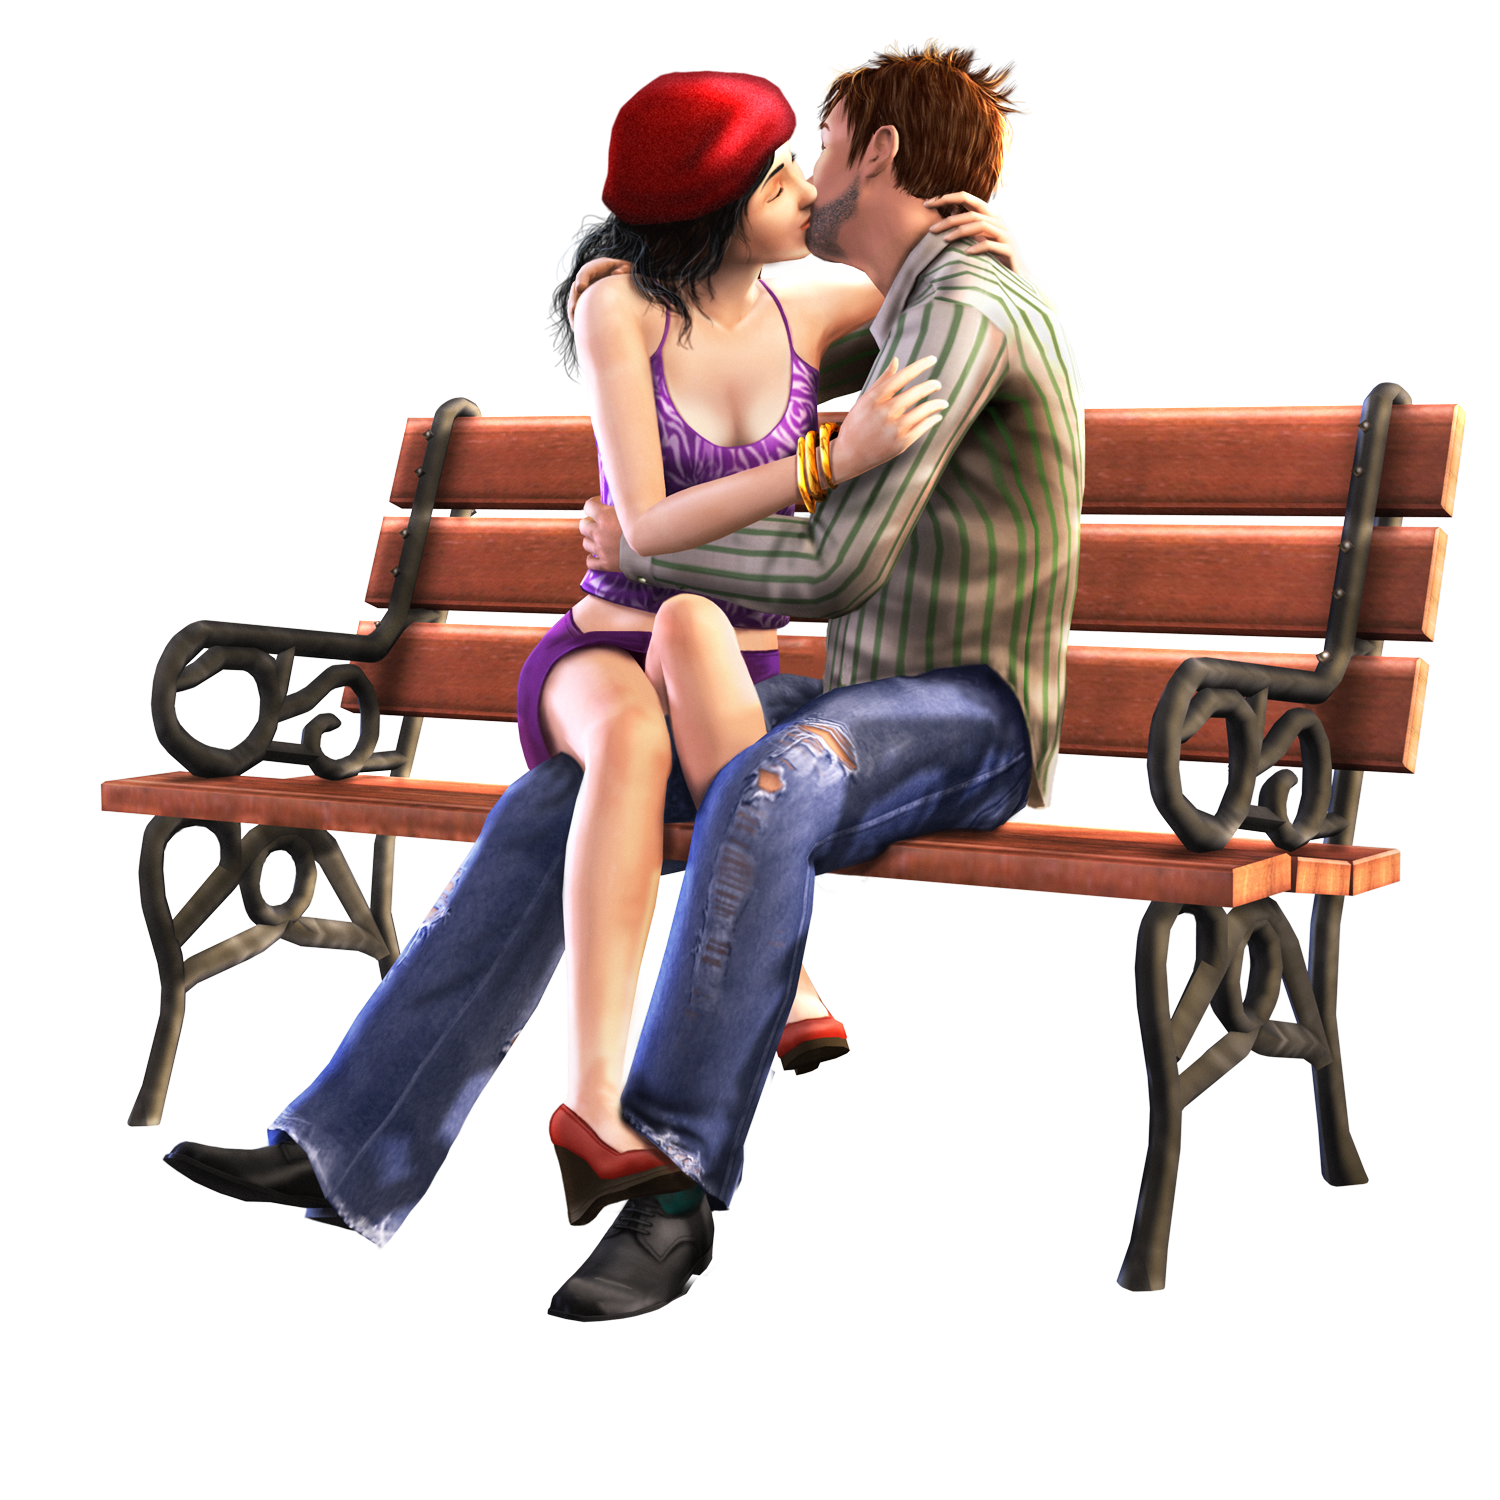 Кетнап картинки. Симс 3 любовь. Поцелуй сидя. Парень с девушкой на скамейке. Поцелуй на лавочке.